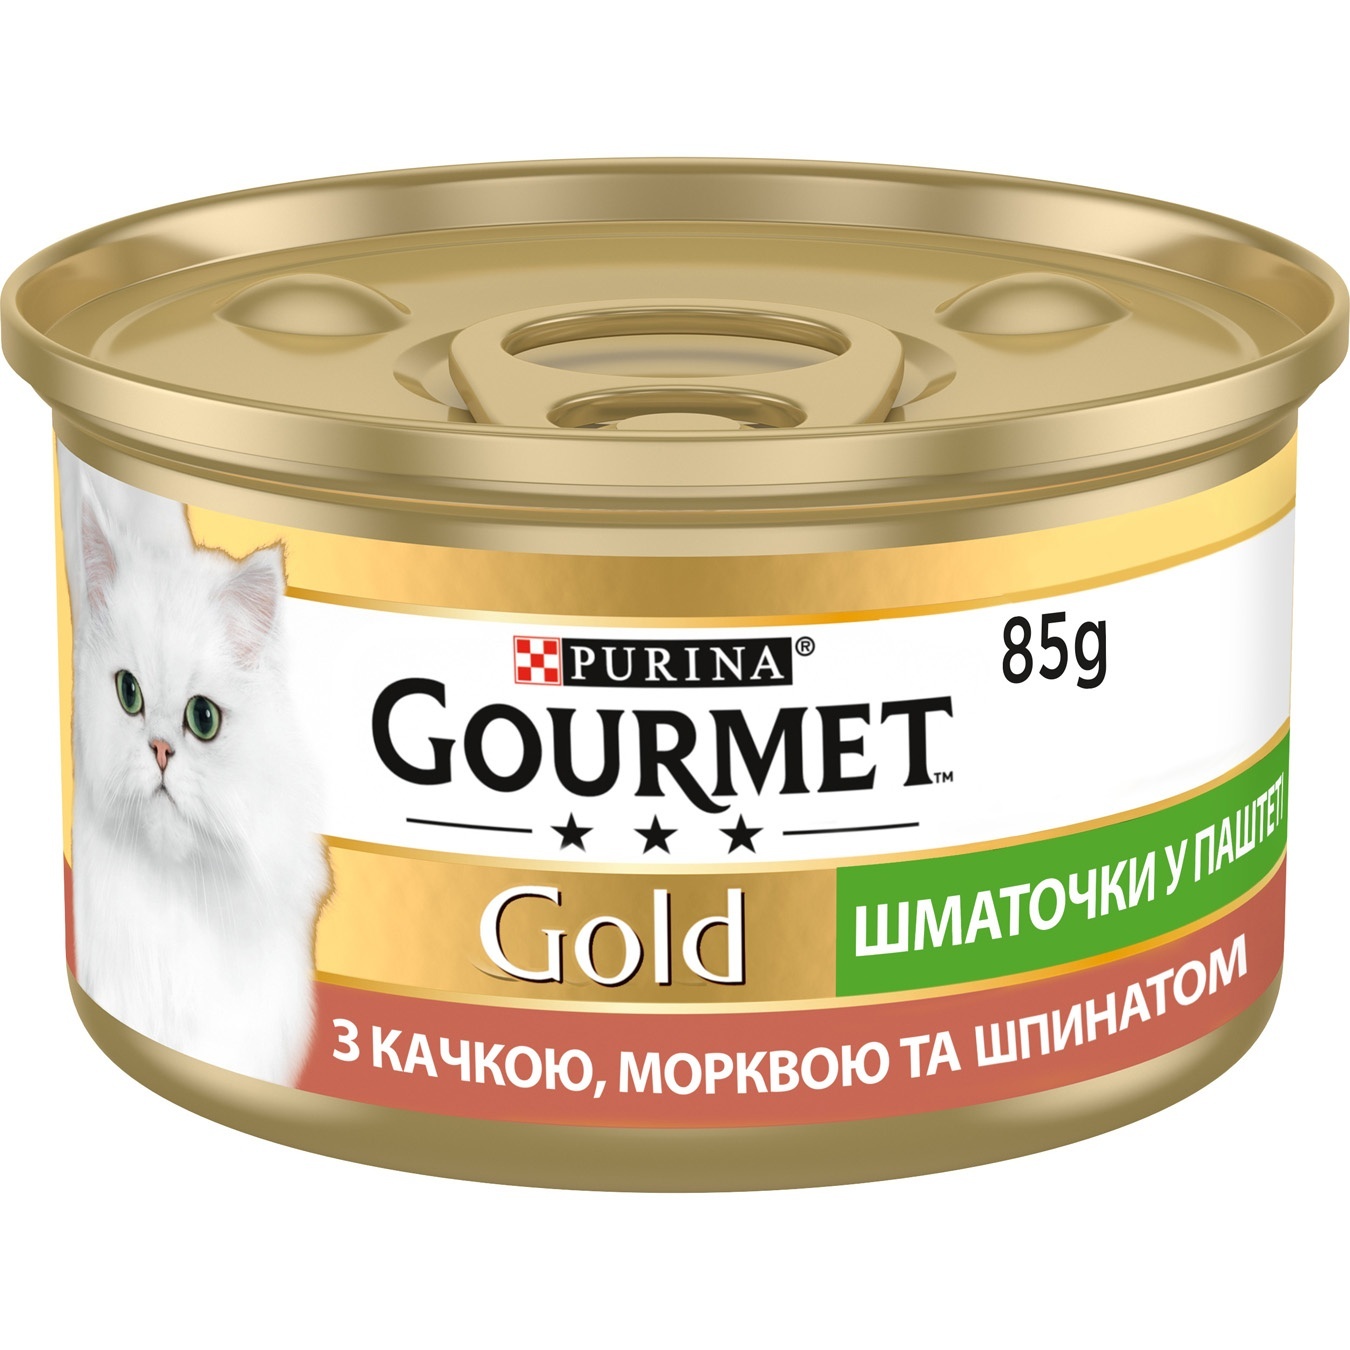 Корм Purina Gourmet Gold з качкою морквою та шпинатом шматочки у паштеті для дорослих котів 85г